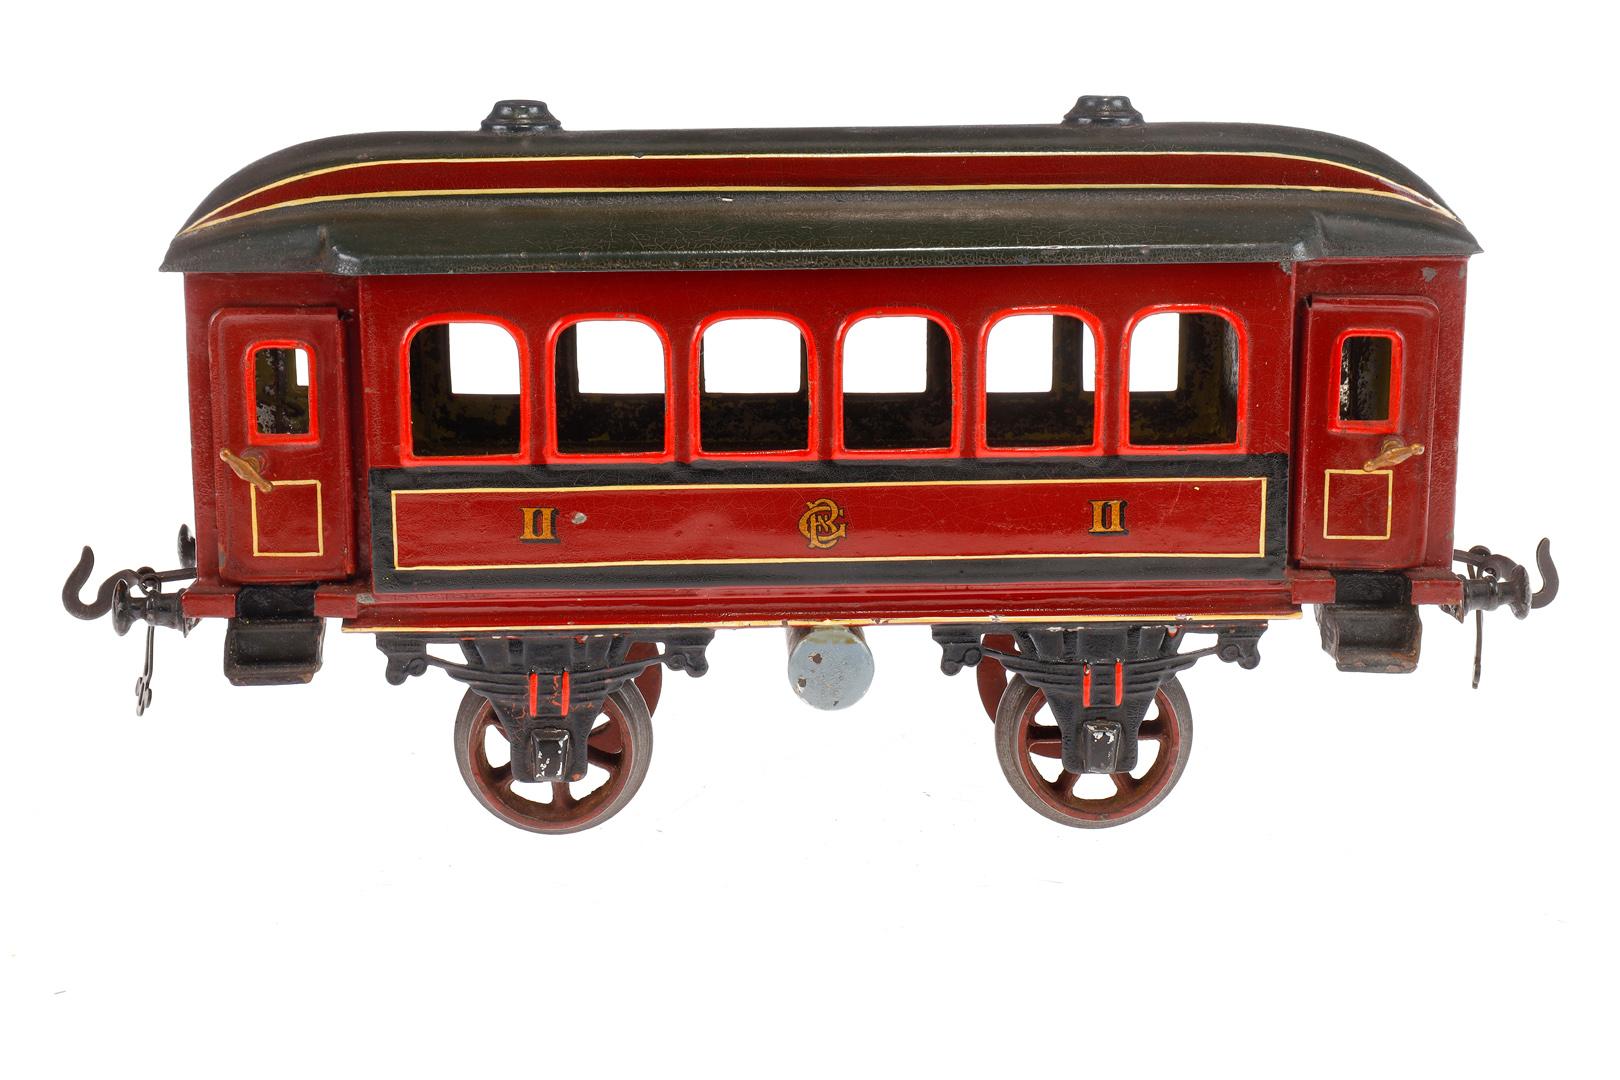 Äußerst seltener Bing Zug, Spur 3, Spurweite 67 mm, uralt, mit Batterie, Bing Vollbahnlok, - Image 10 of 15